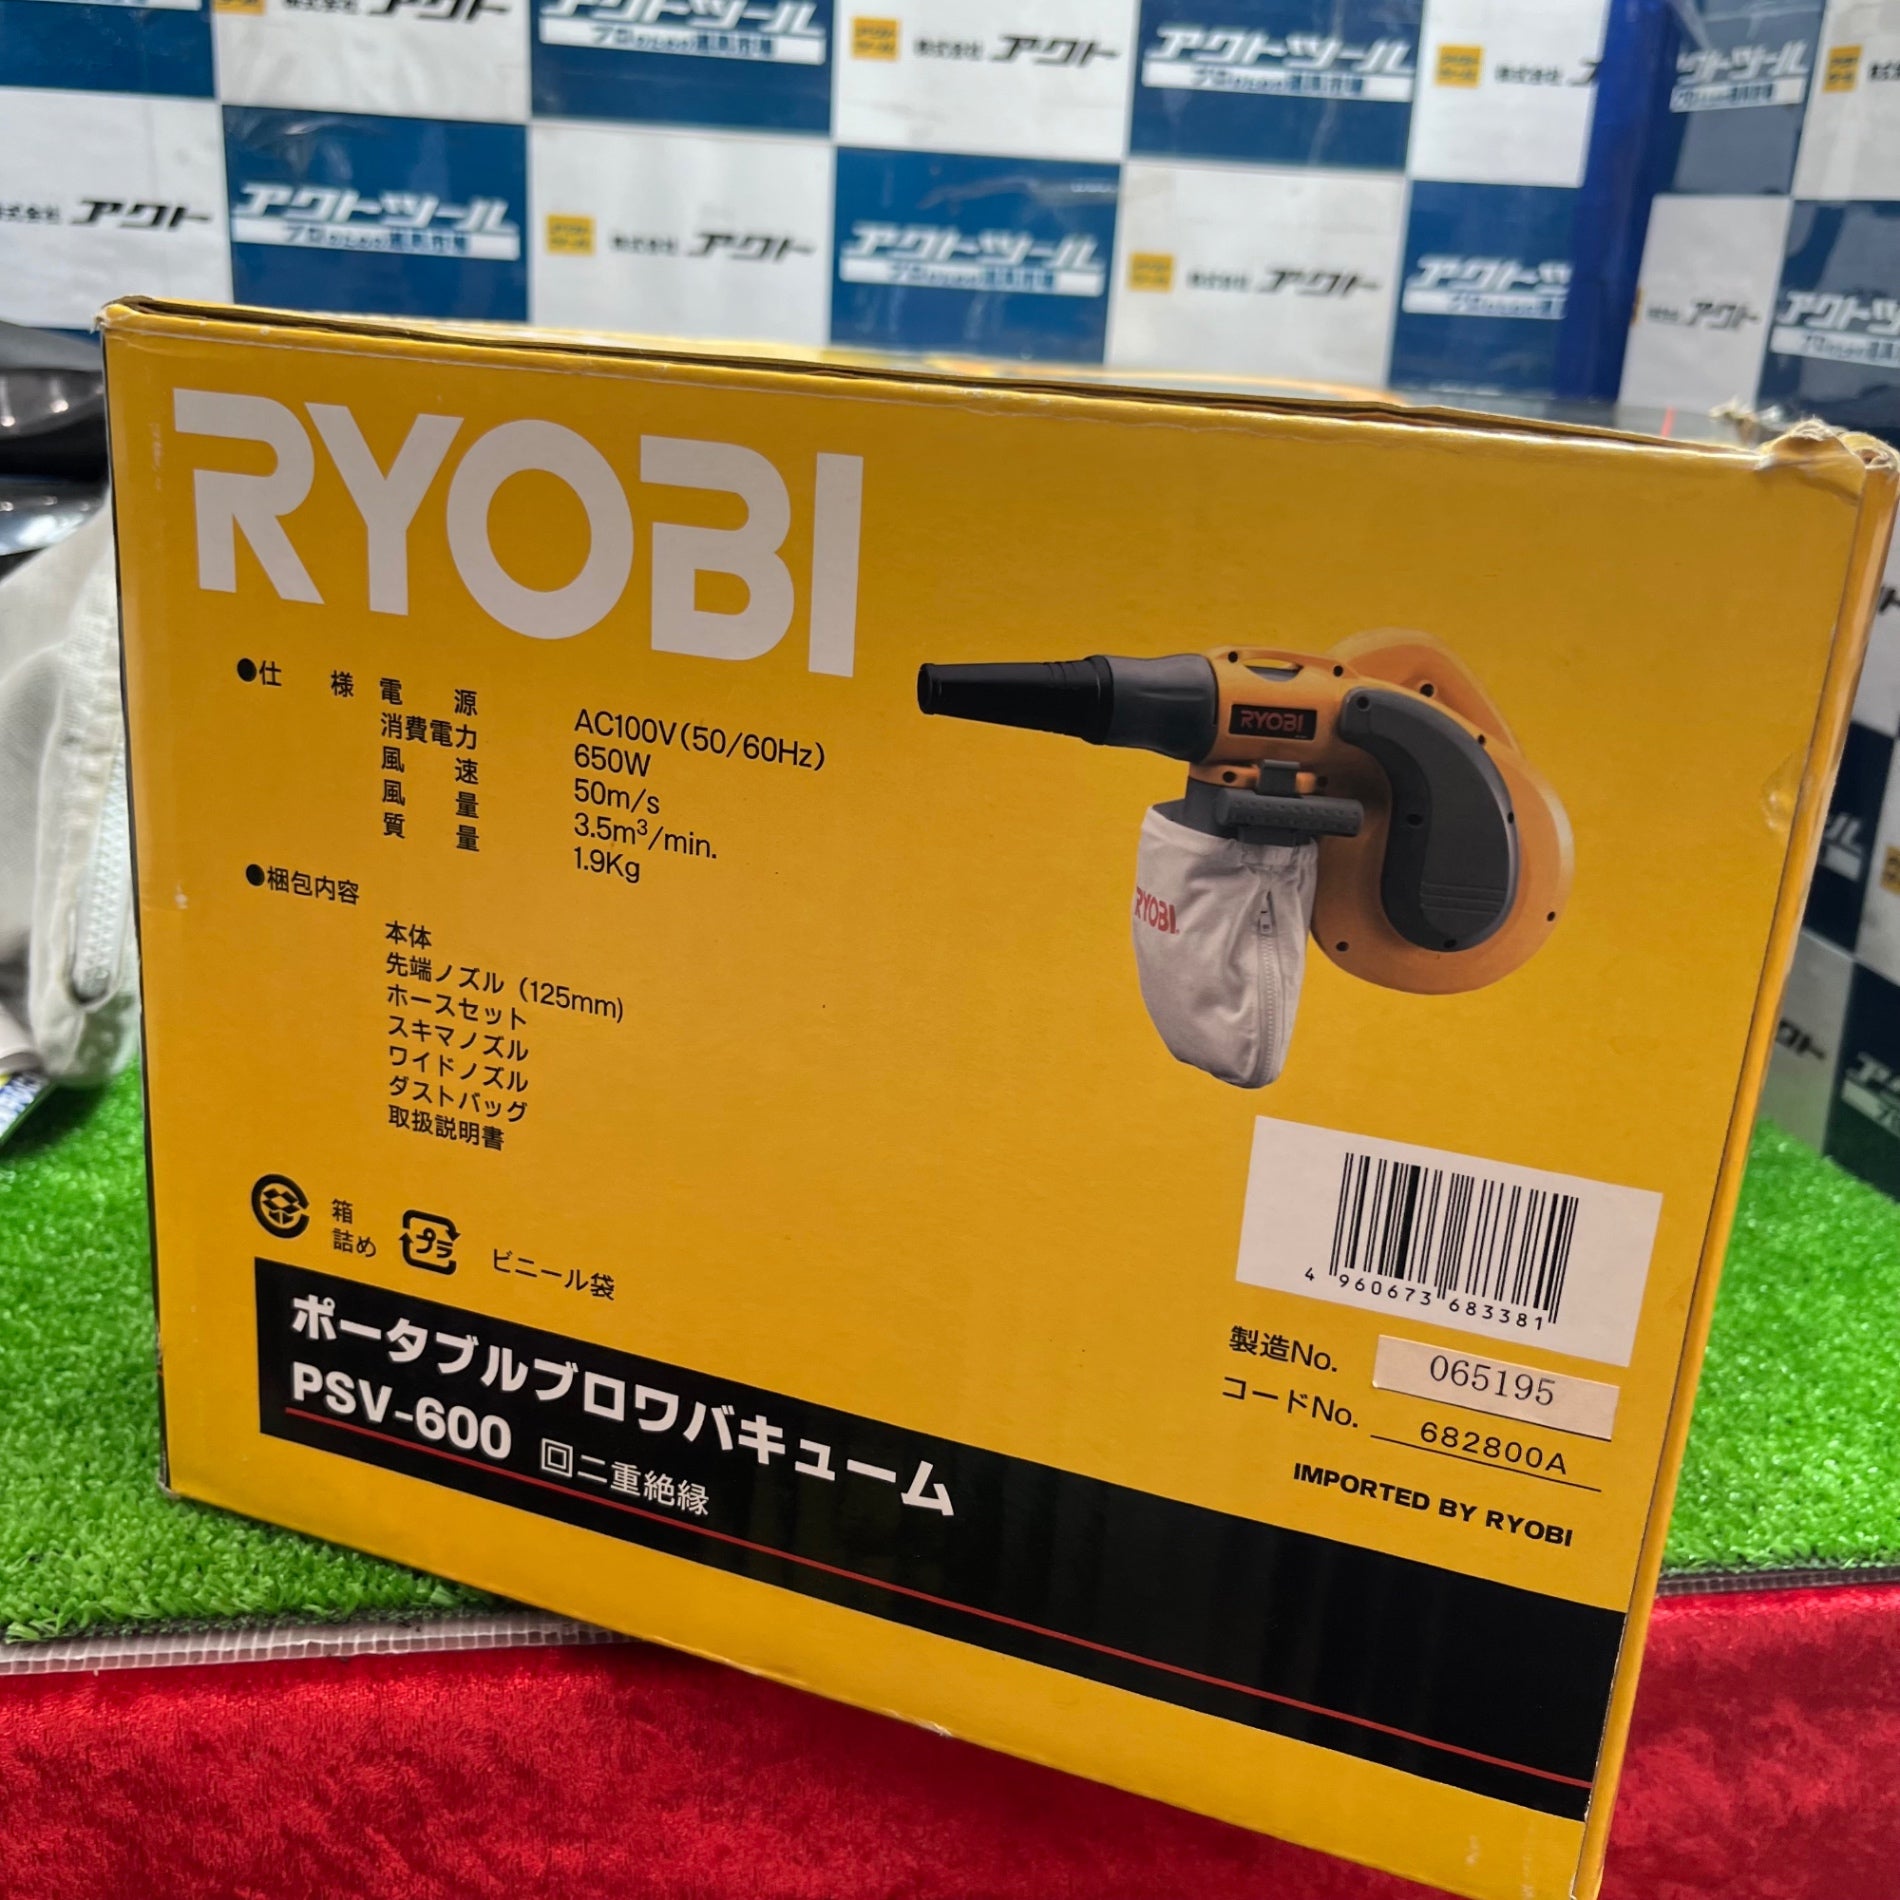 ☆リョービ(RYOBI) ポータブルブロワバキューム PSV-600 682800A【草加店】